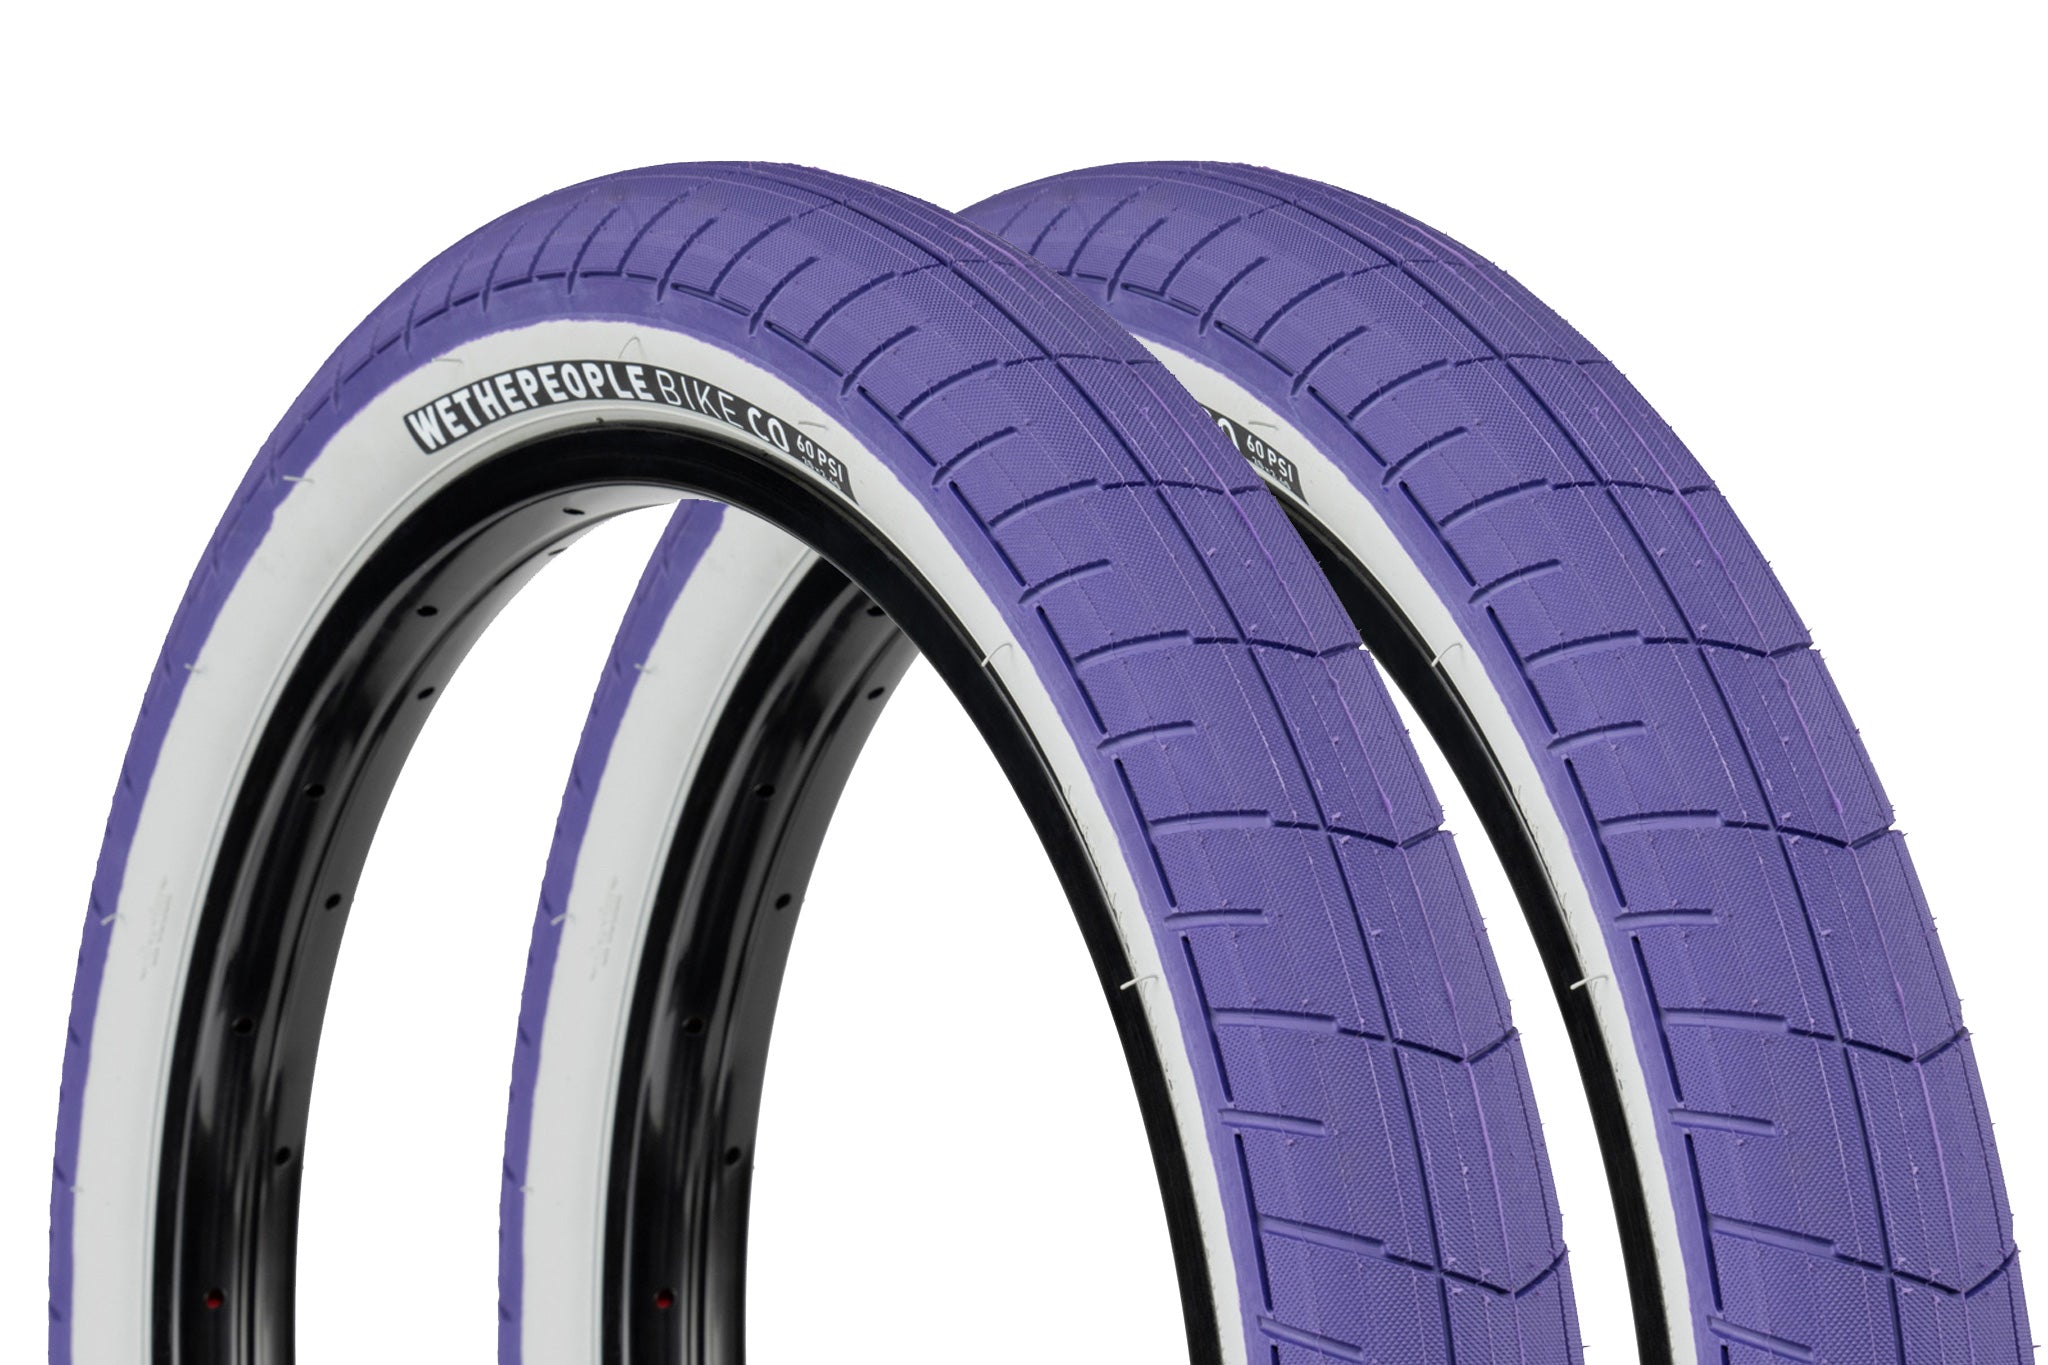 Wethepeople activate Tyre - 2.35 - Purple